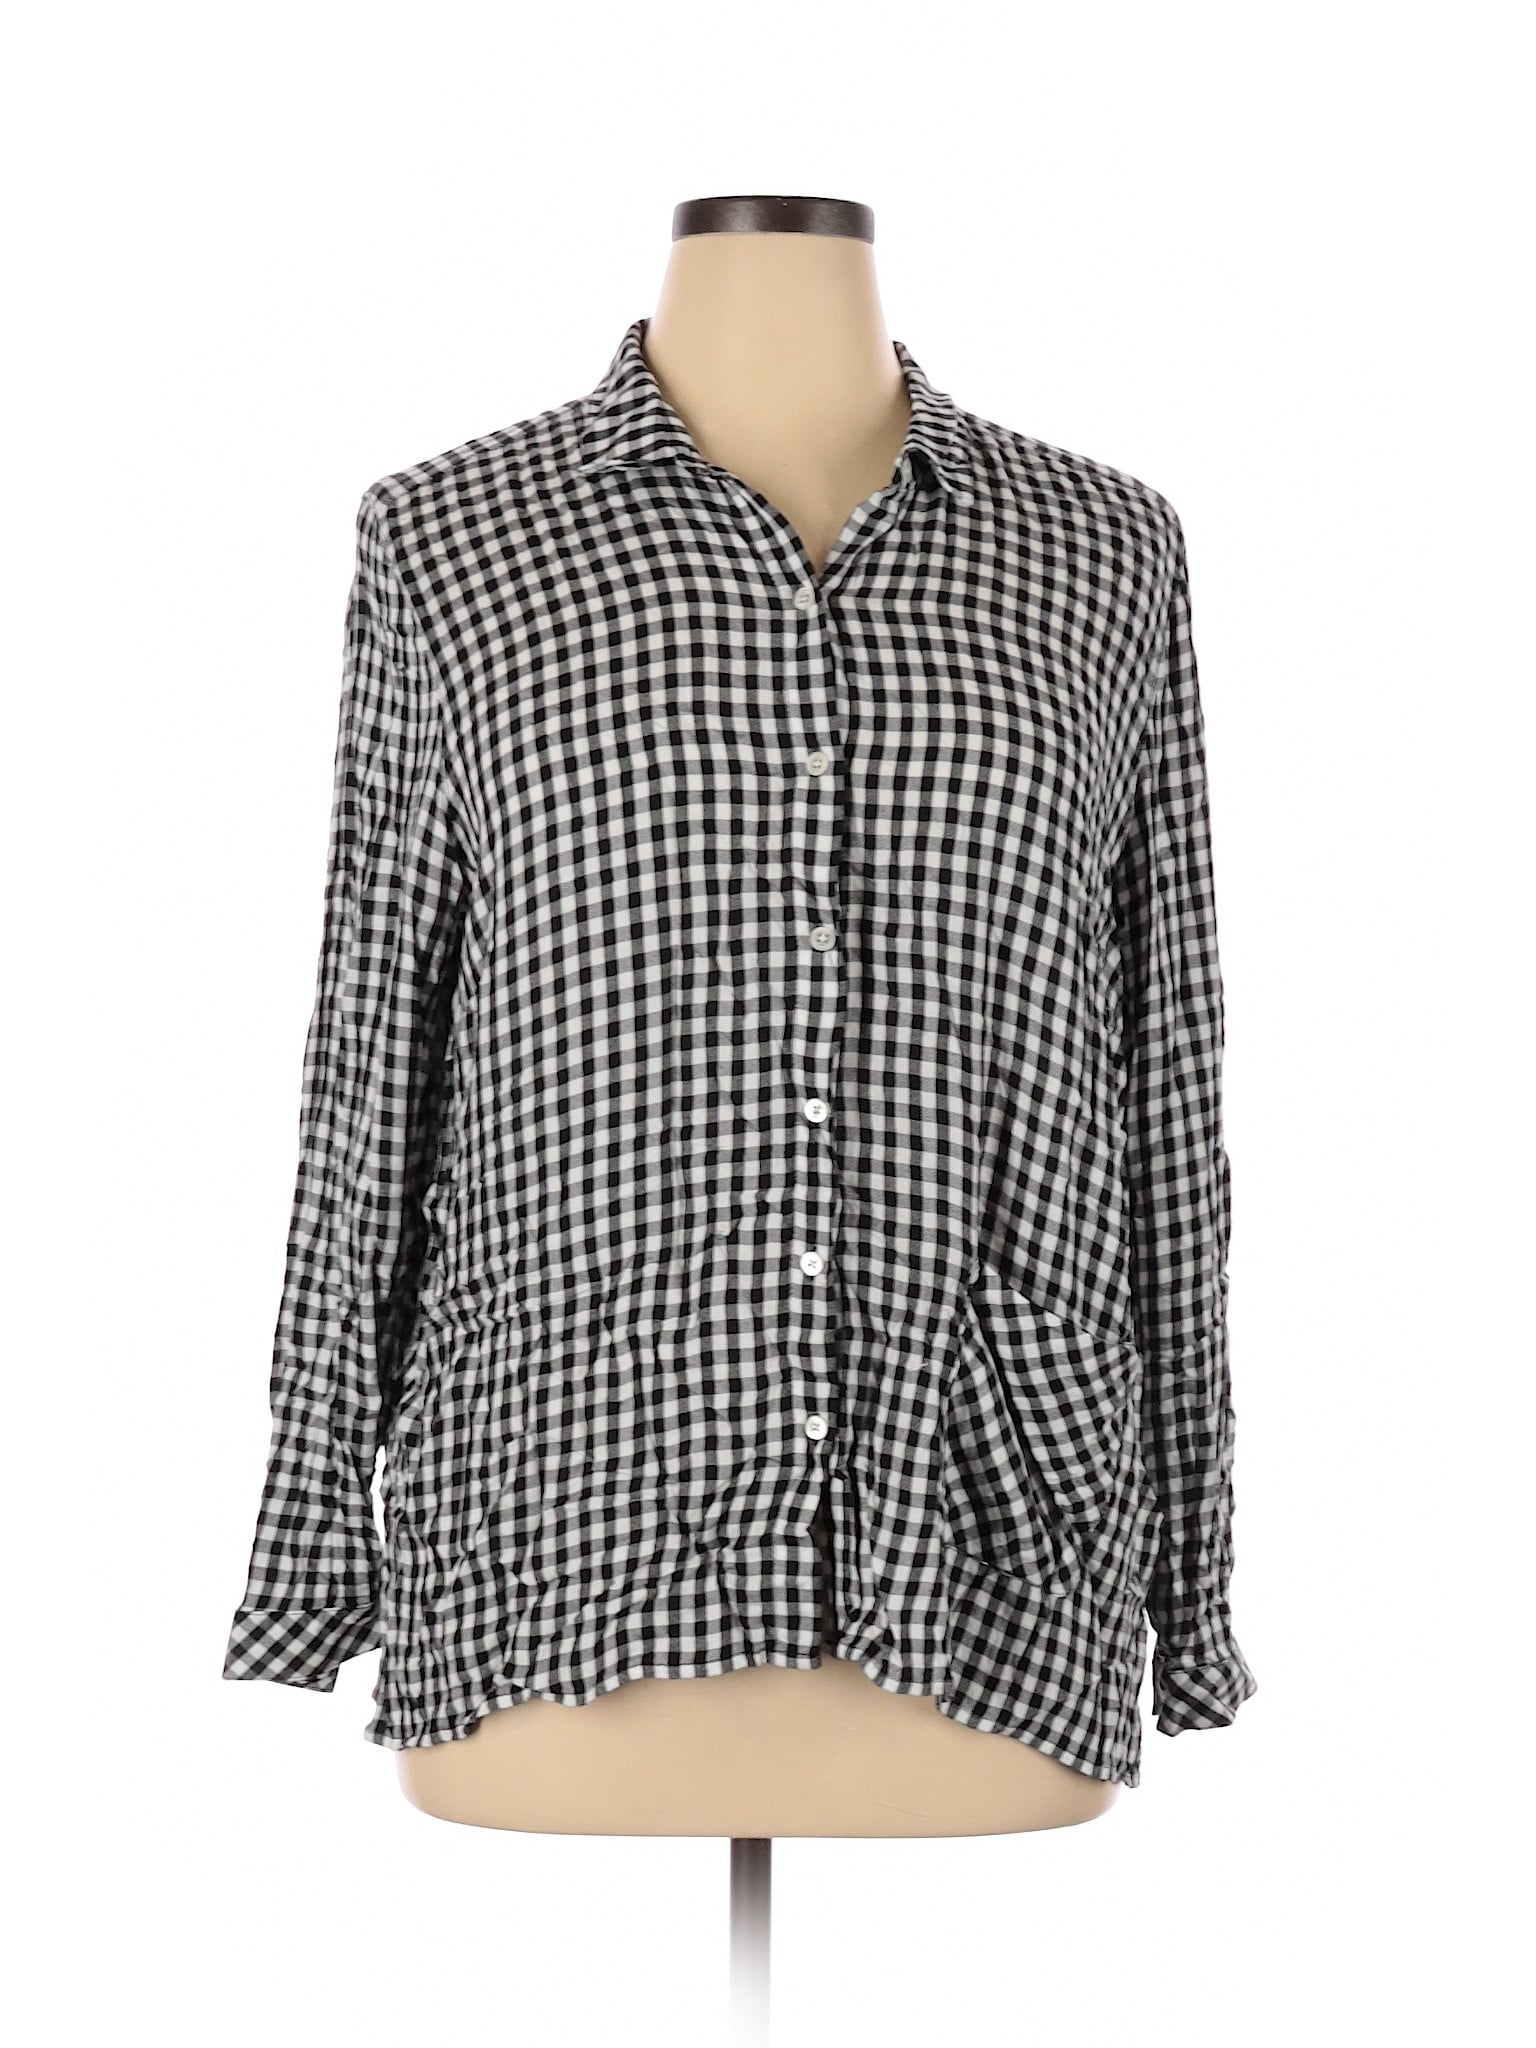 J.jill - Pre-Owned J.jill Women's Size XL Long Sleeve Button-Down Shirt ...